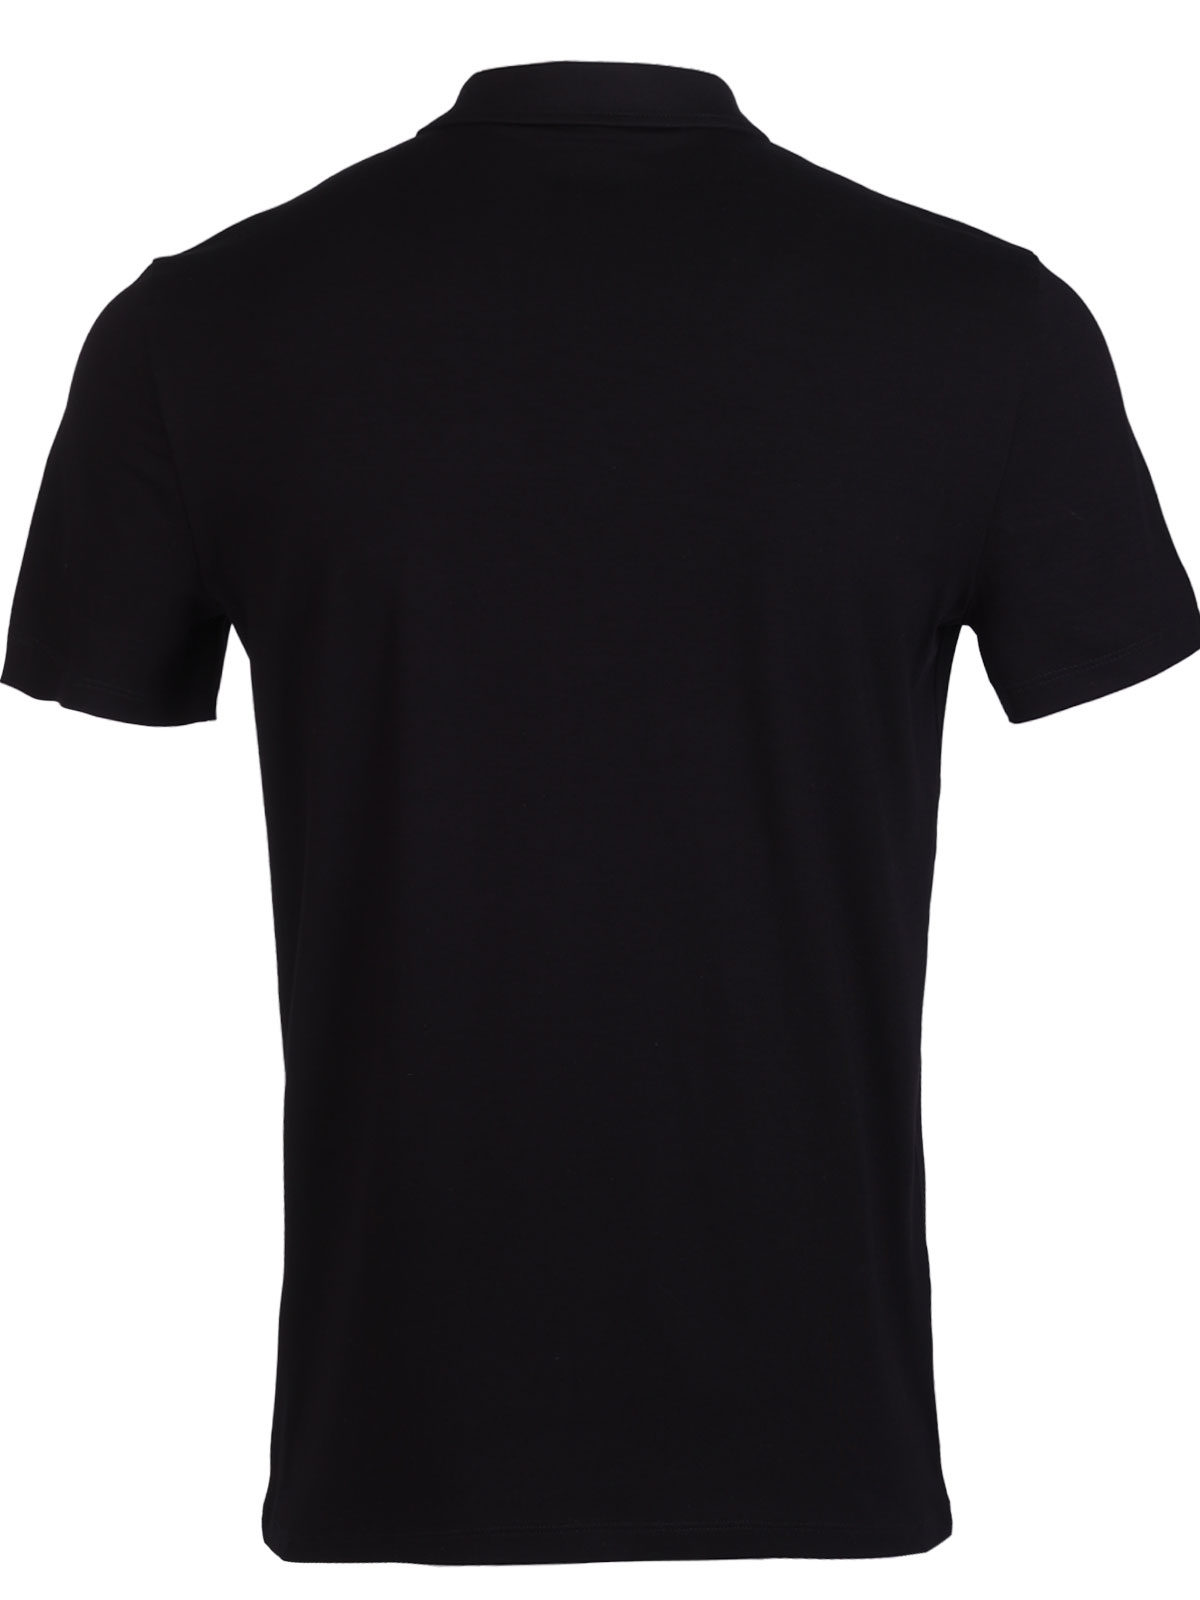 Μπλουζάκι σε μαύρο χρώμα με γιακά - 94420 € 33.18 img2